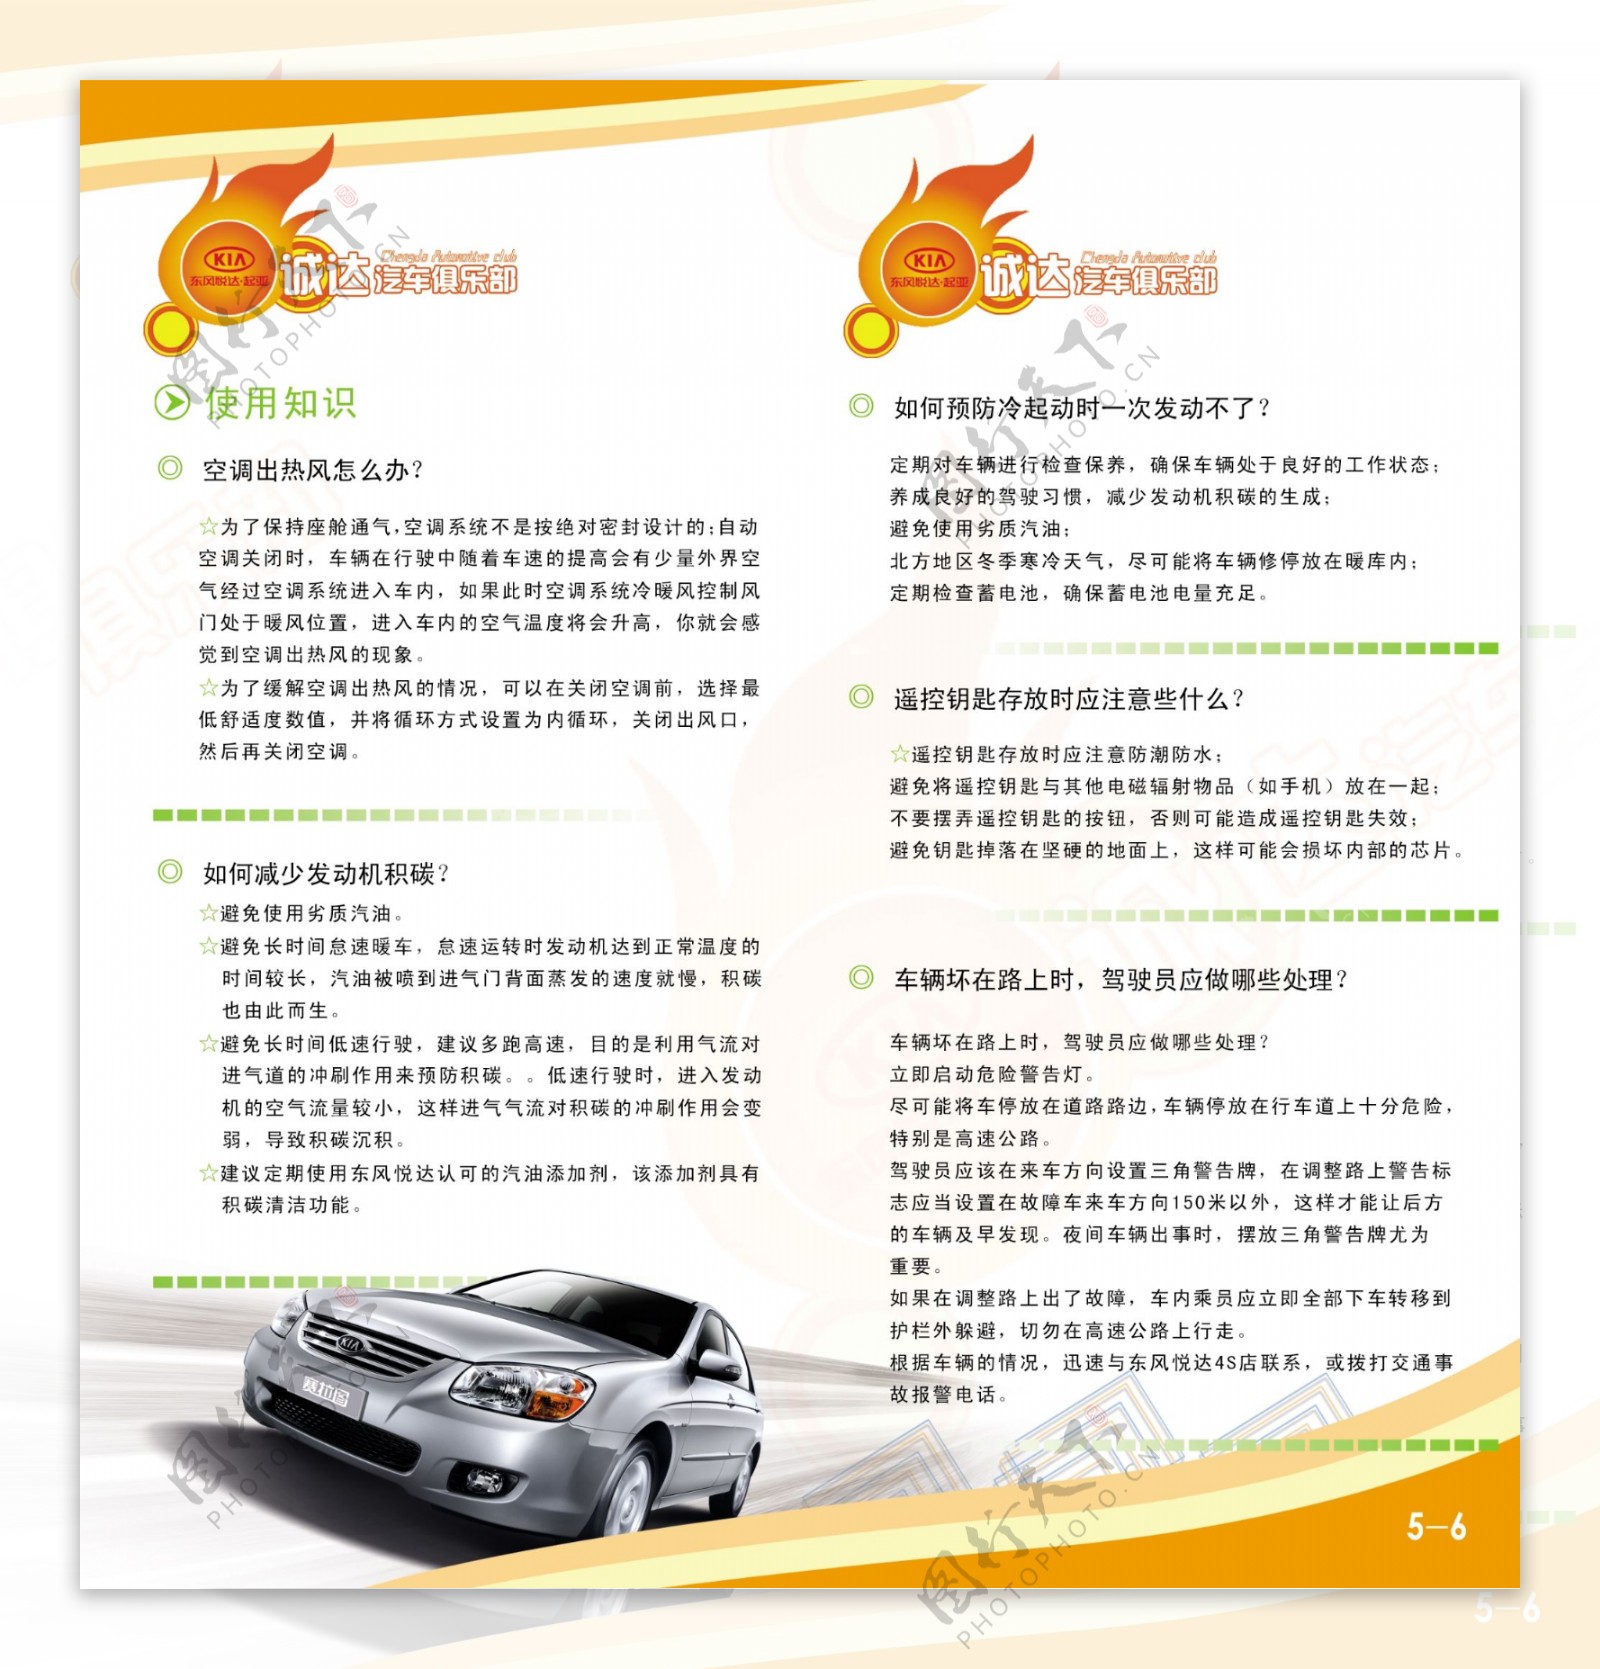 汽车服务用车常识画册56页画册汽车汽车俱乐部画册图片